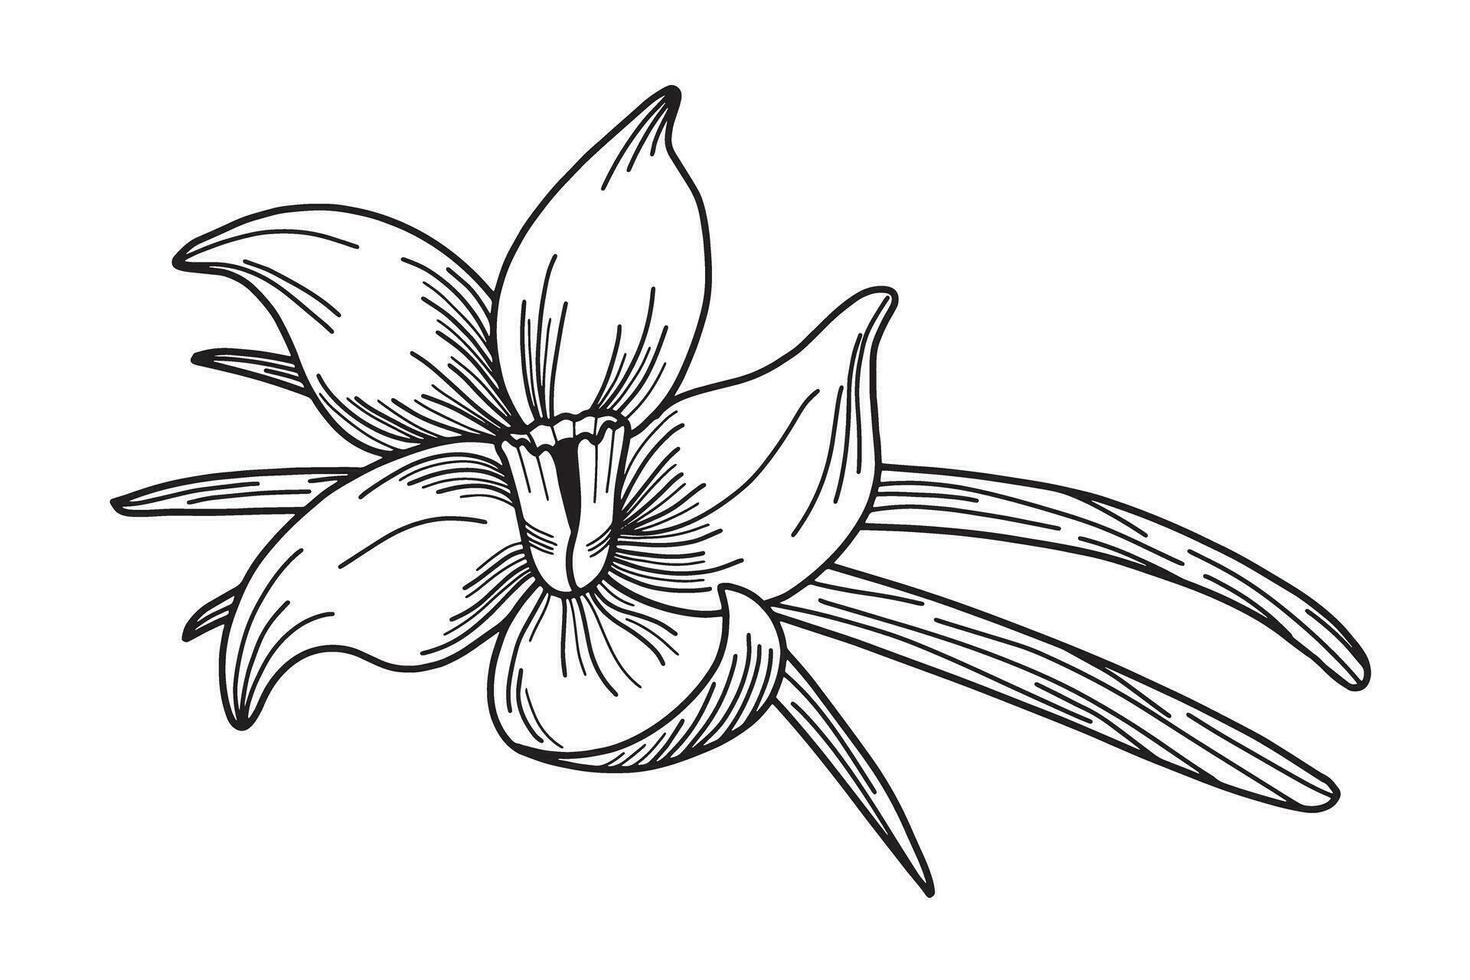 schwarz und Weiß Hand gezeichnet Illustration von Vanille Blume mit Vanille Hülsen. Kochen und Aromatherapie Zutat. Vektor Illustration isoliert auf Weiß Hintergrund